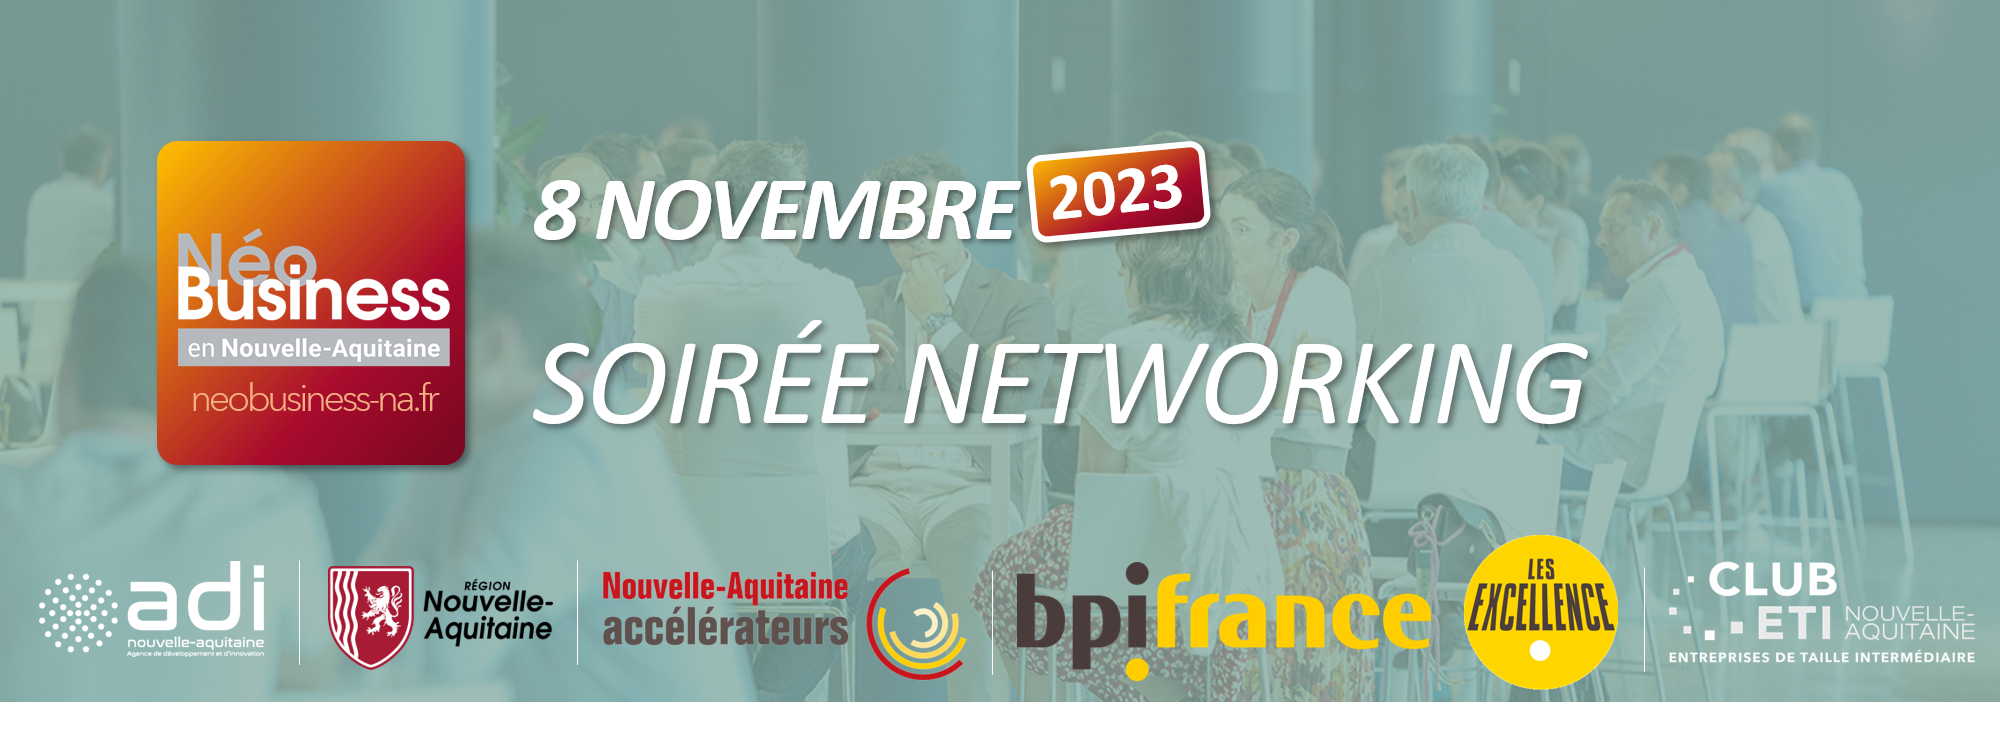 Soirée Networking Accélérateur PME-ETI ADI NéoBusiness NA 2023